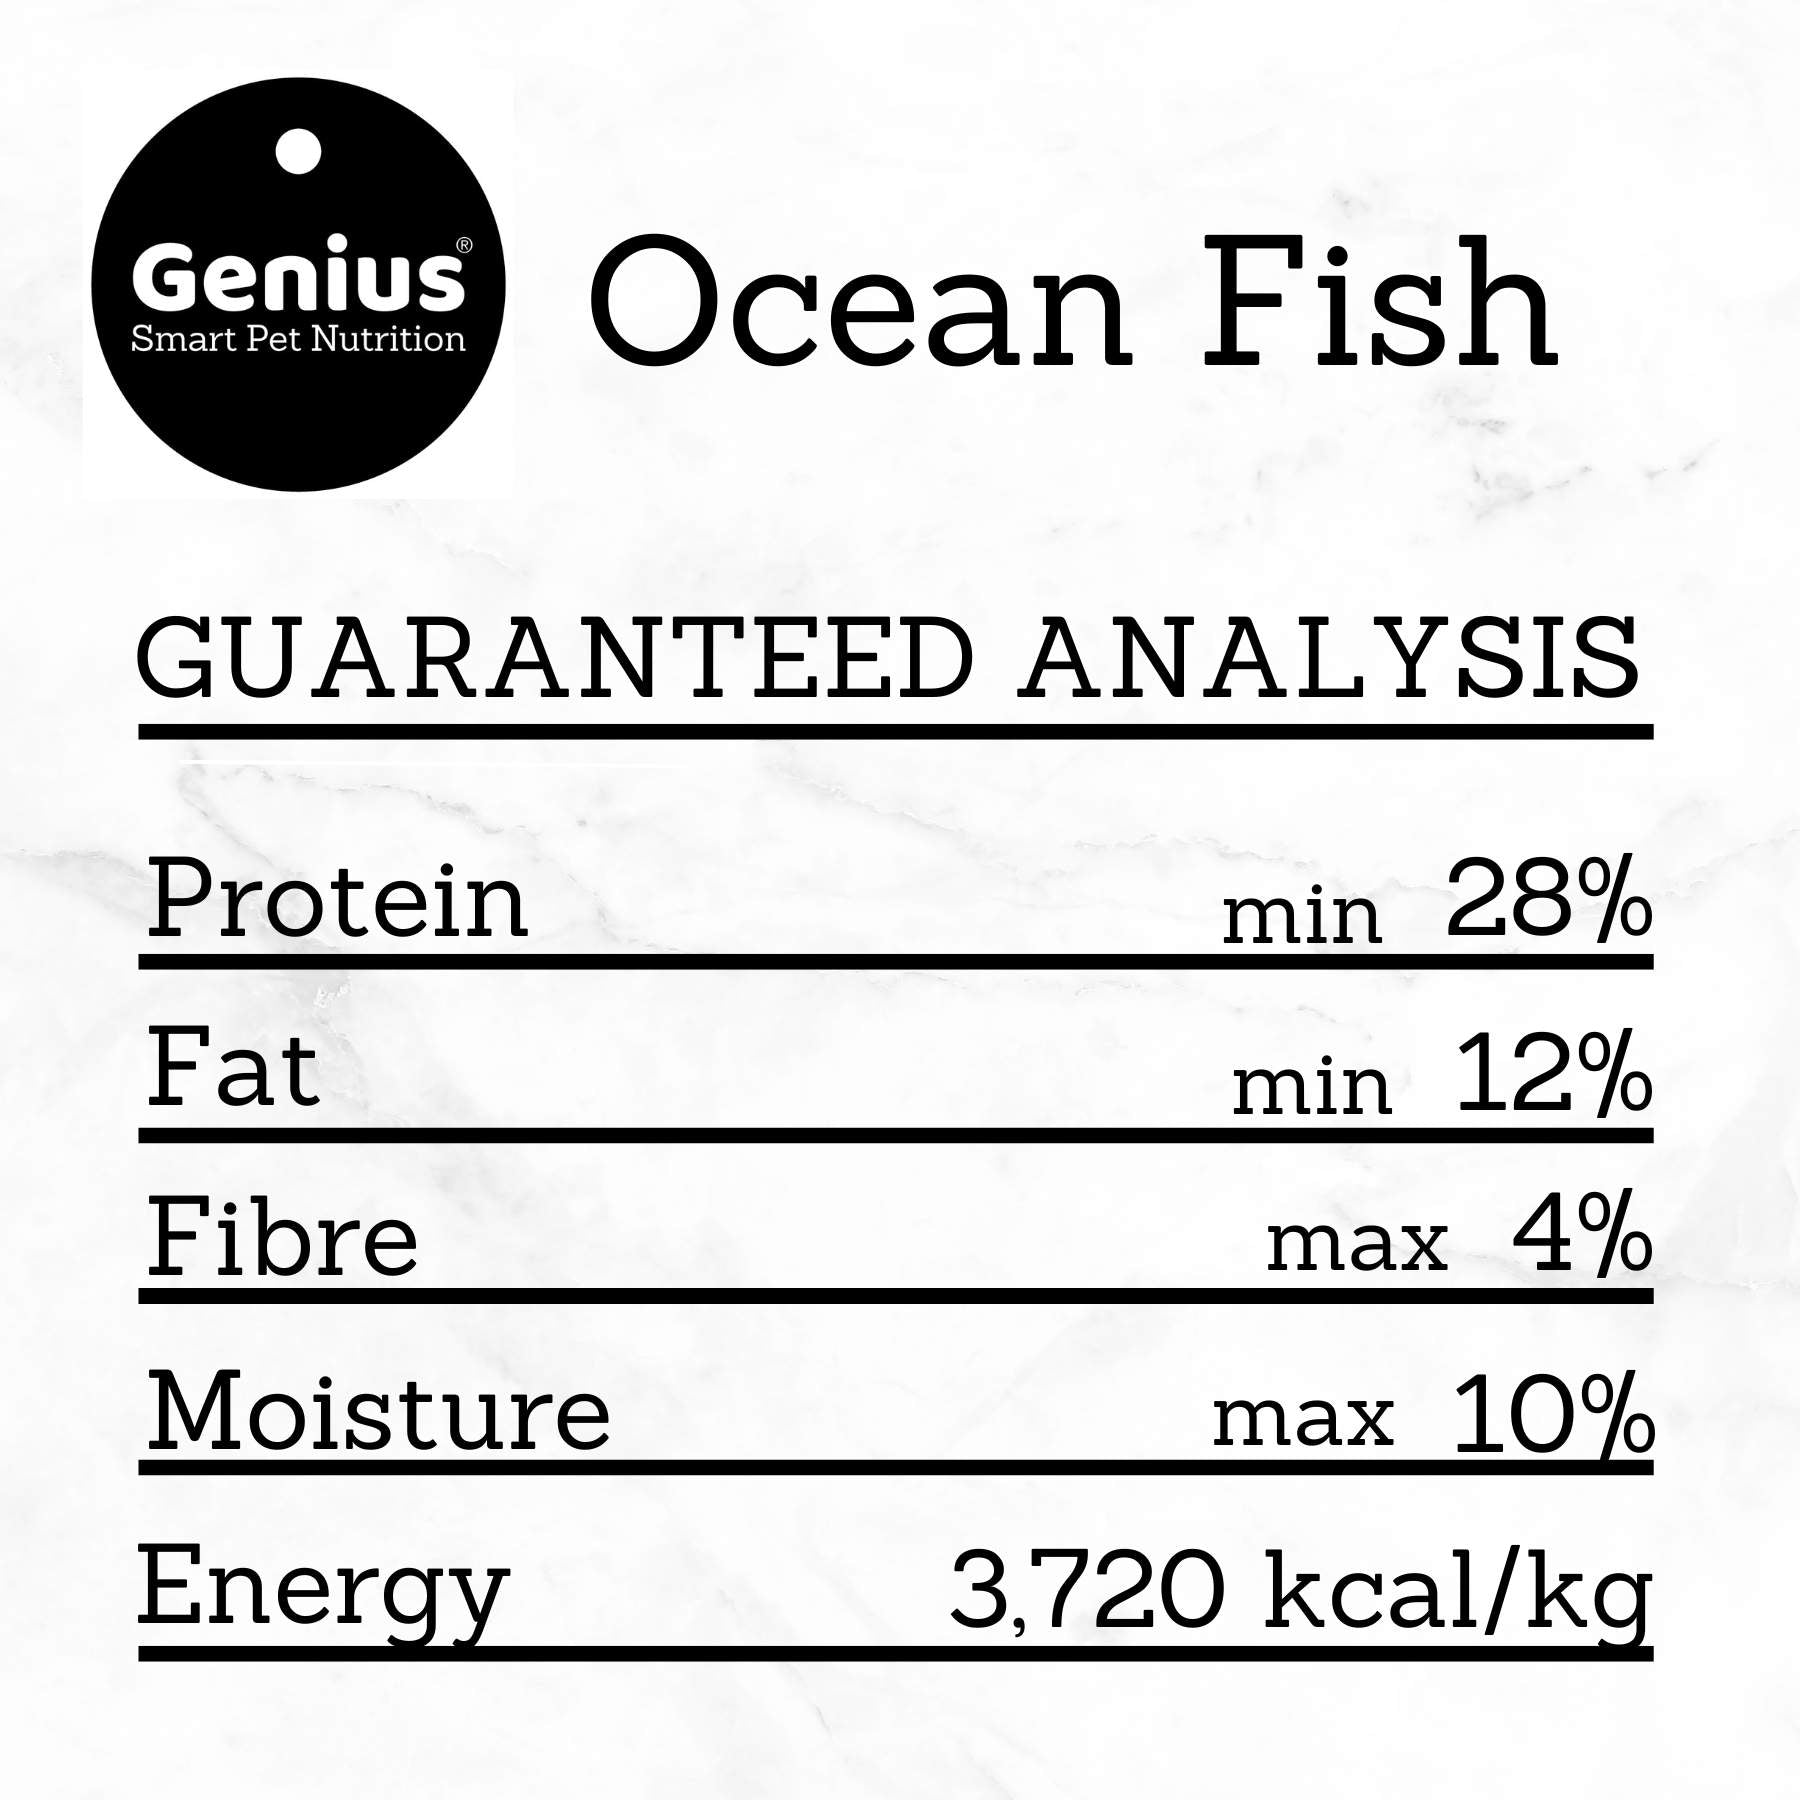 Guaranteed analysis table for Genius Pet Food Ocean Fish dog kibble